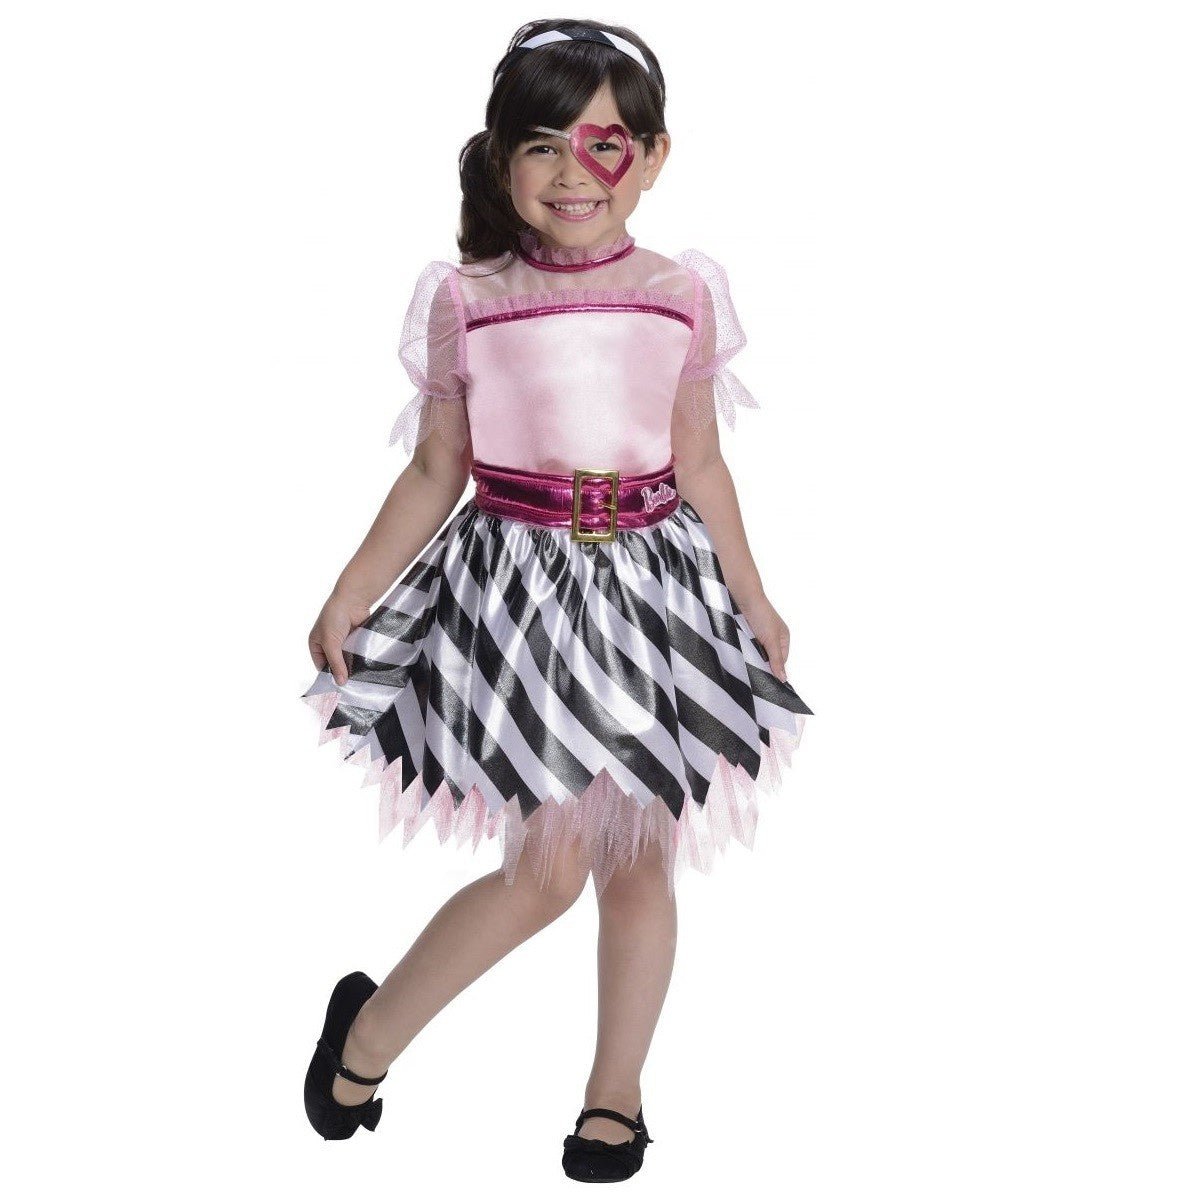 Costume Enfant - Barbie Pirate - Party Shop